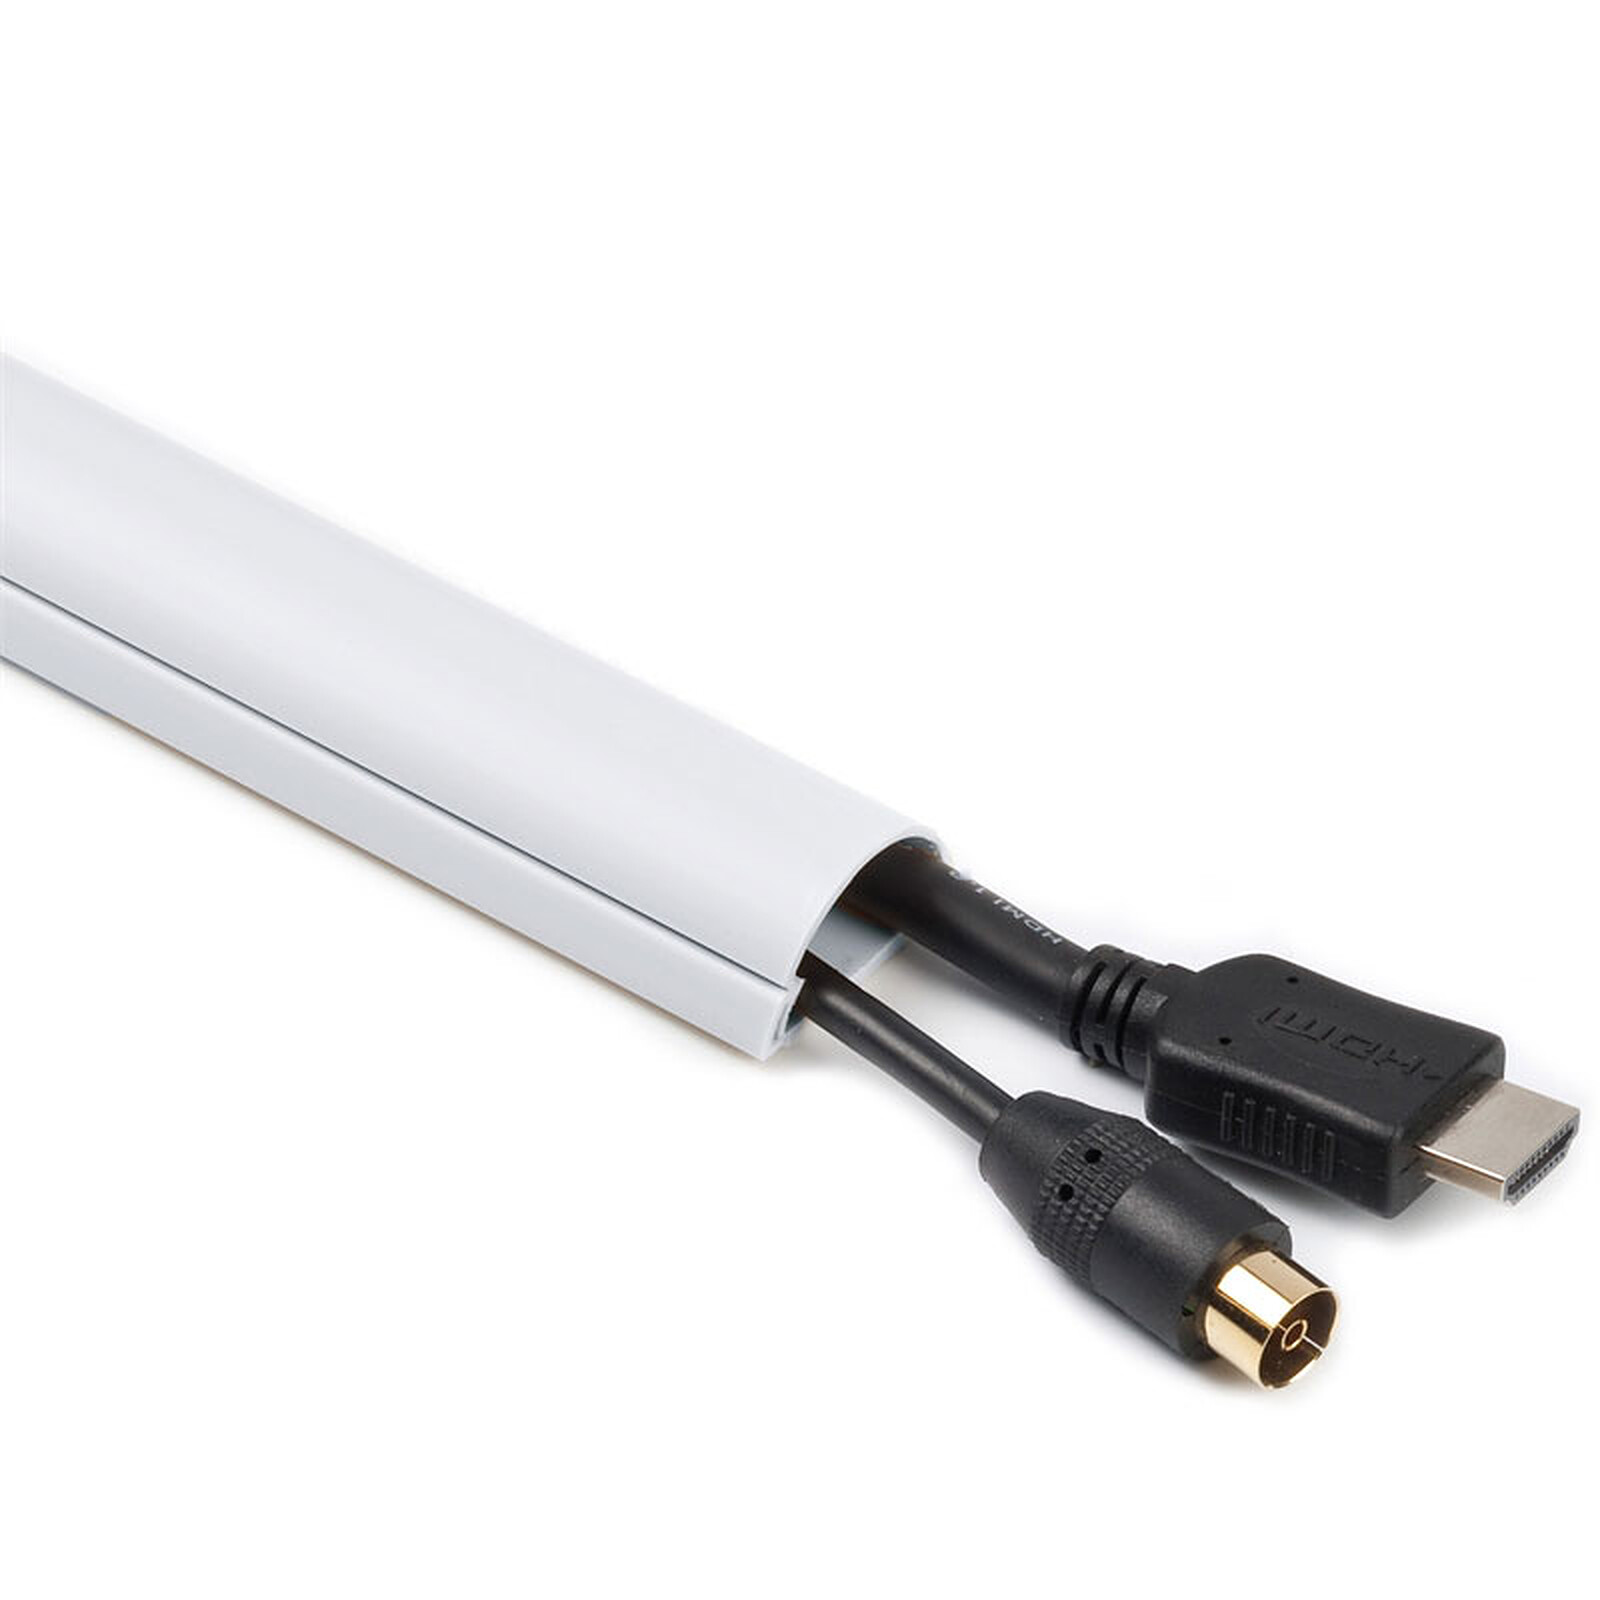 Gaine de rangement pour câbles - diamètre max. 100 mm - longueur 10 m  (coloris blanc) - Passe câble - Garantie 3 ans LDLC